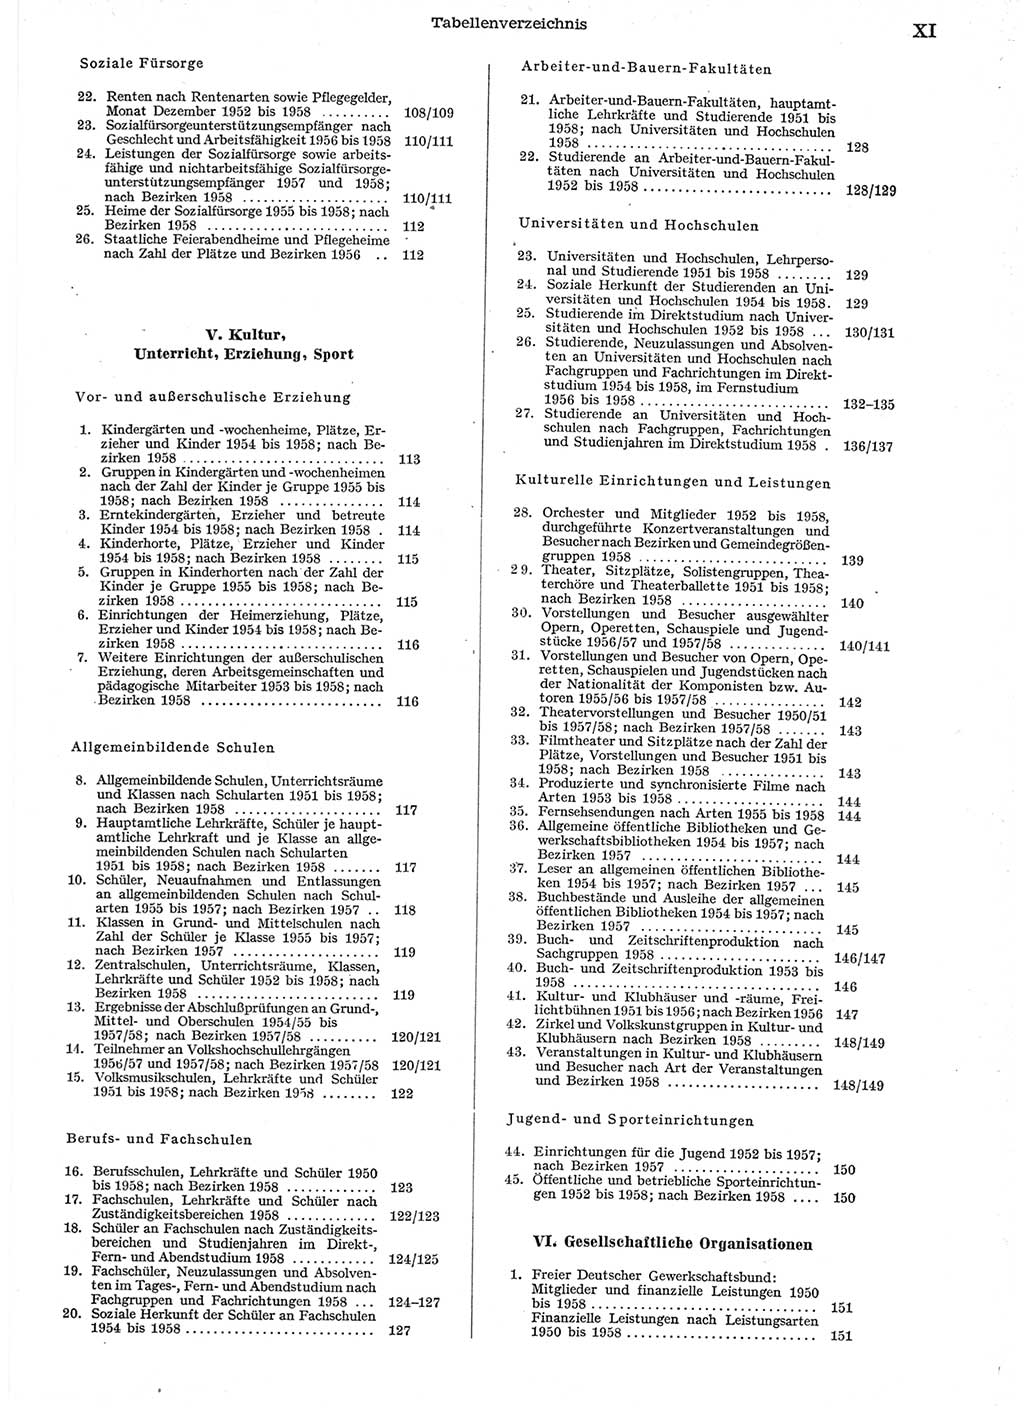 Statistisches Jahrbuch der Deutschen Demokratischen Republik (DDR) 1958, Seite 11 (Stat. Jb. DDR 1958, S. 11)